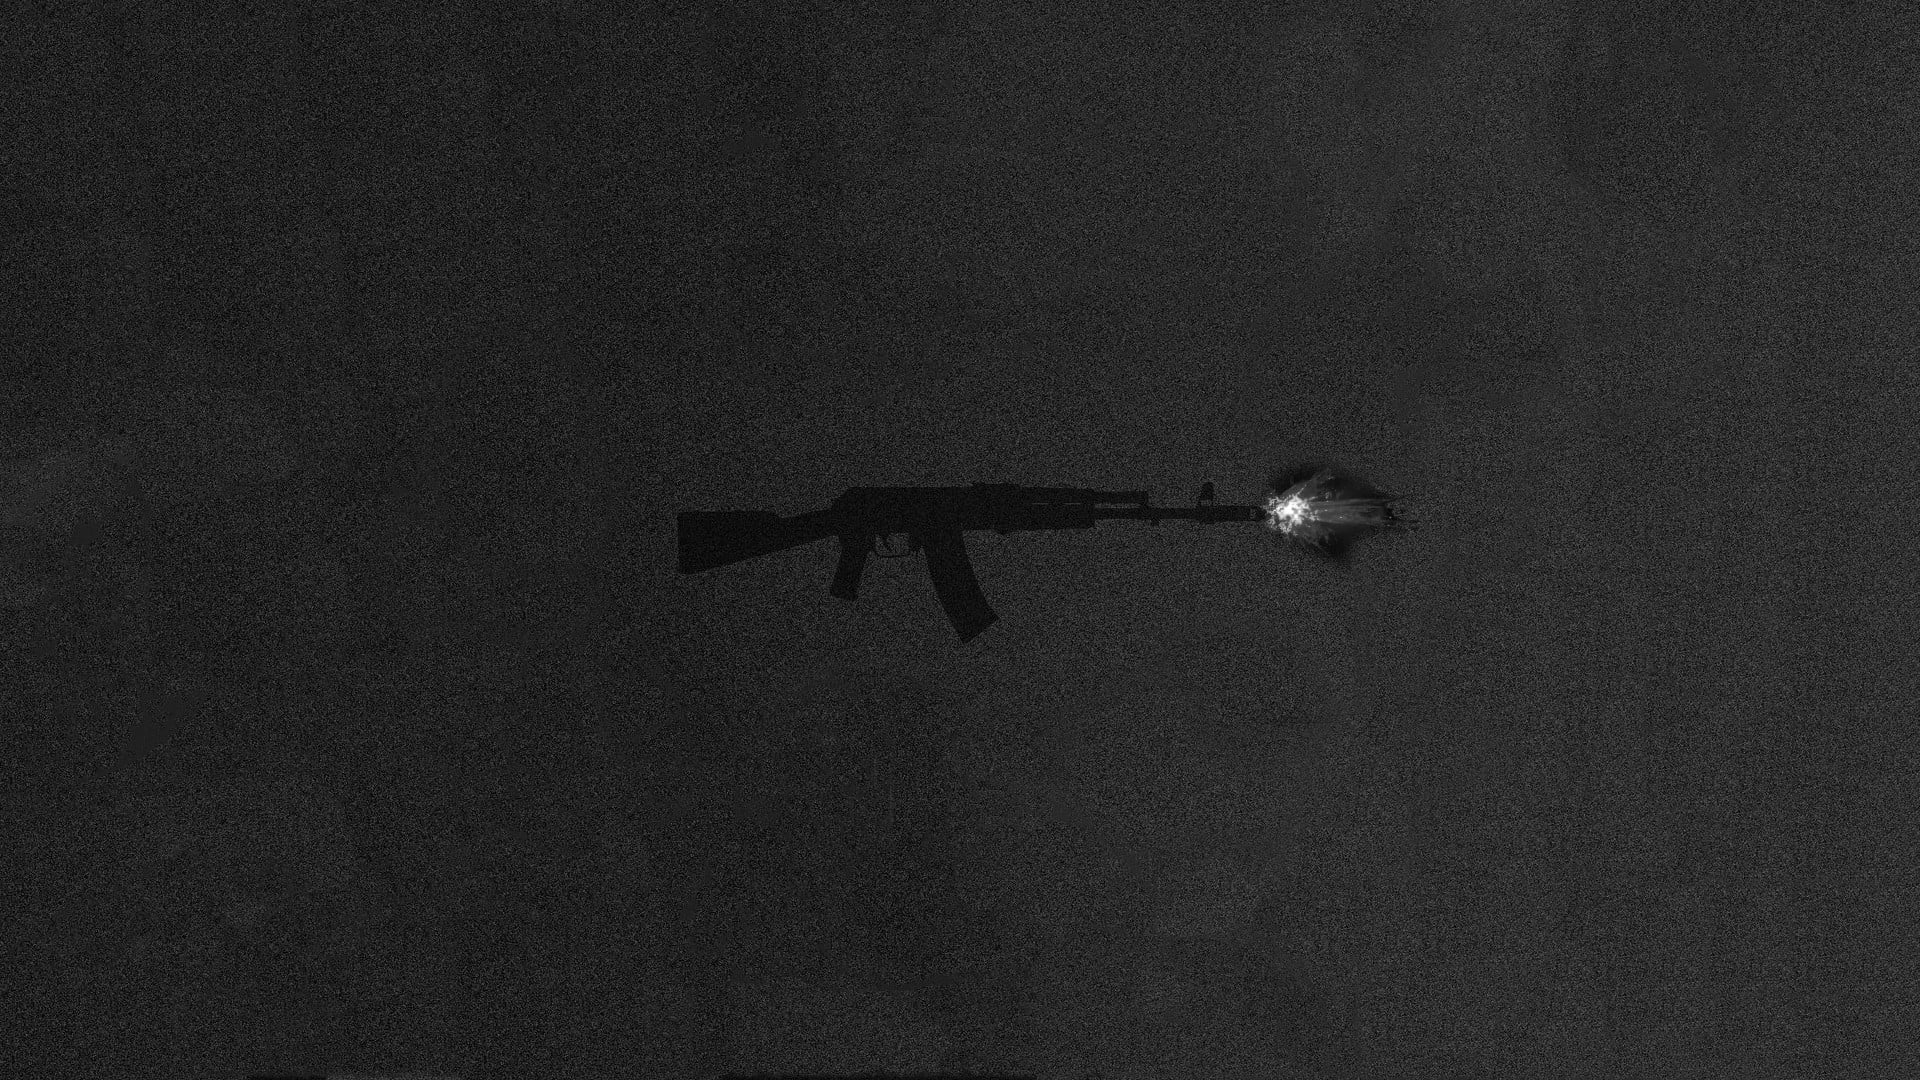 Được thiết kế với độ phân giải cao, hình nền AK-74 sẽ khiến bạn phấn khích khi nhìn thấy chiếc súng được trình bày trên màn hình của mình. Hãy thưởng thức cảm giác mạnh mẽ và tinh thần vững chắc của nó.